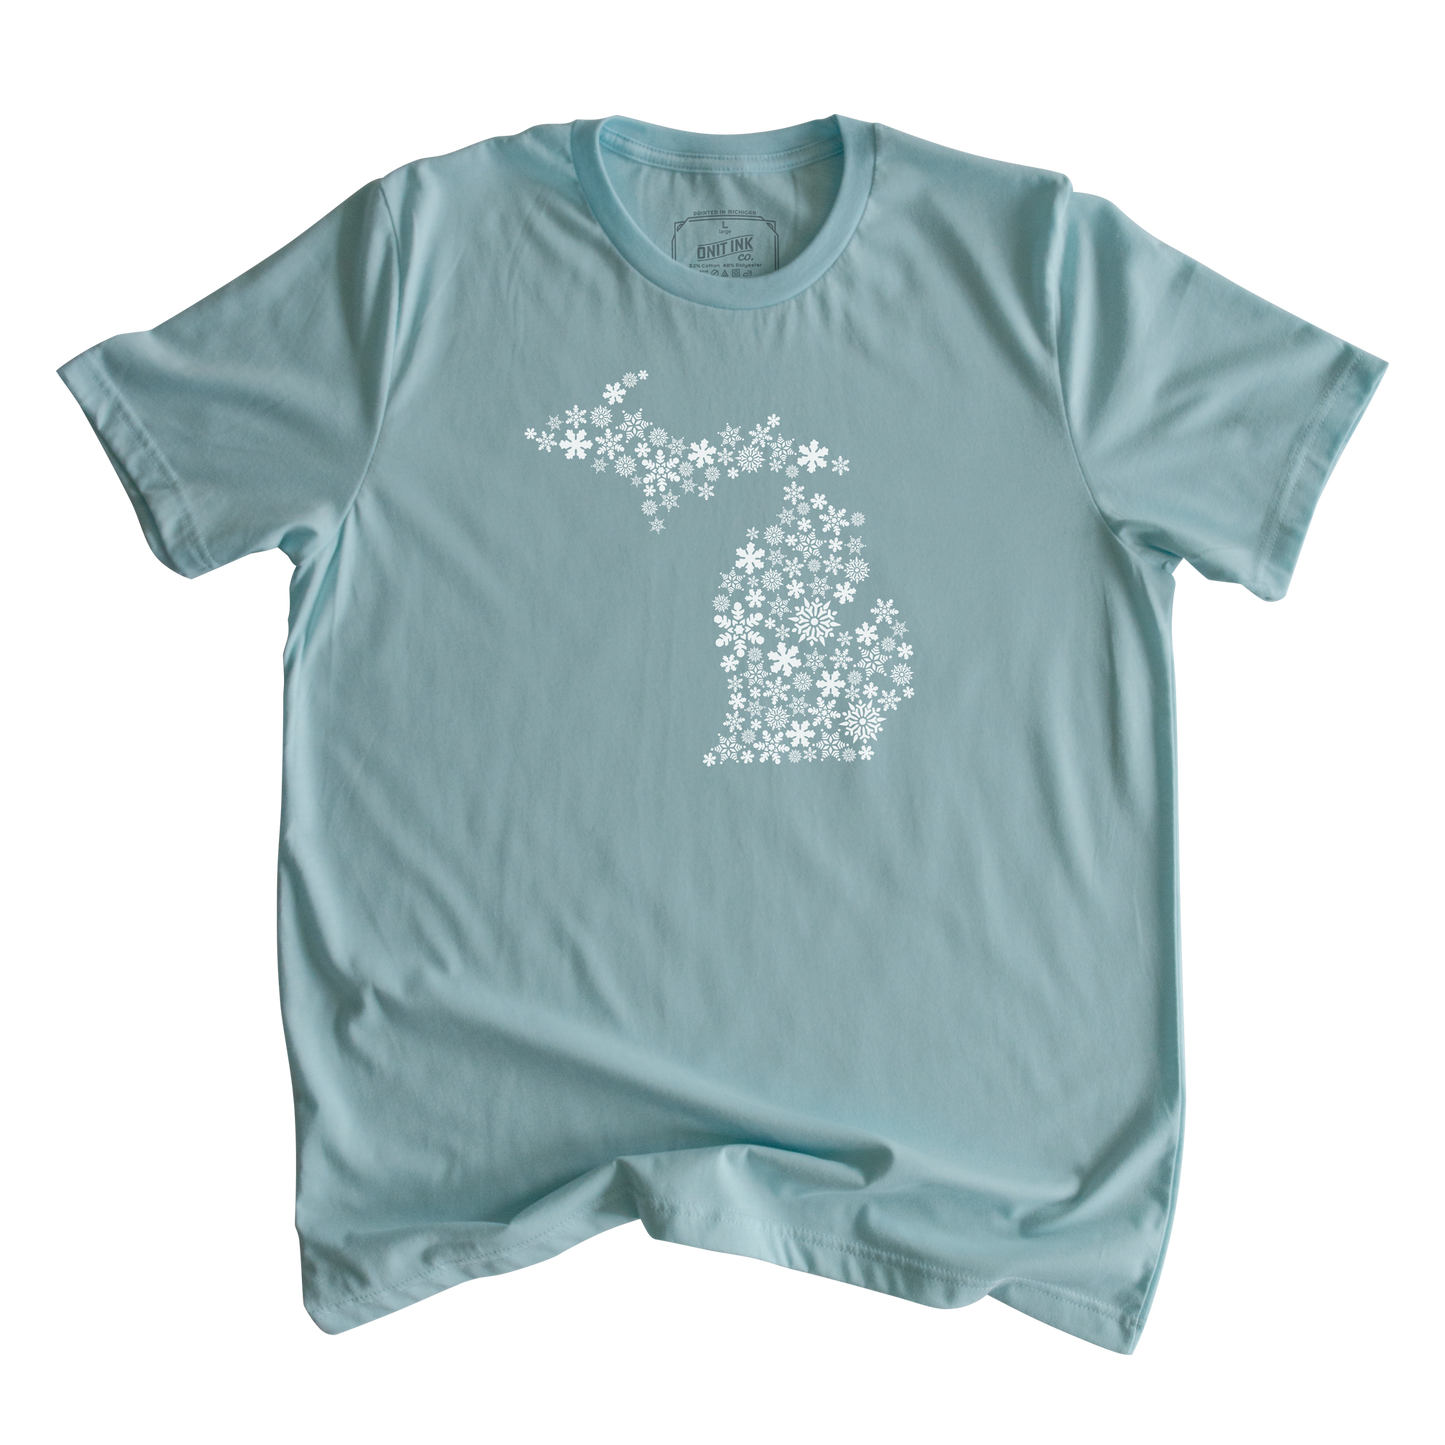 Michigan Snowflakes T-Shirt